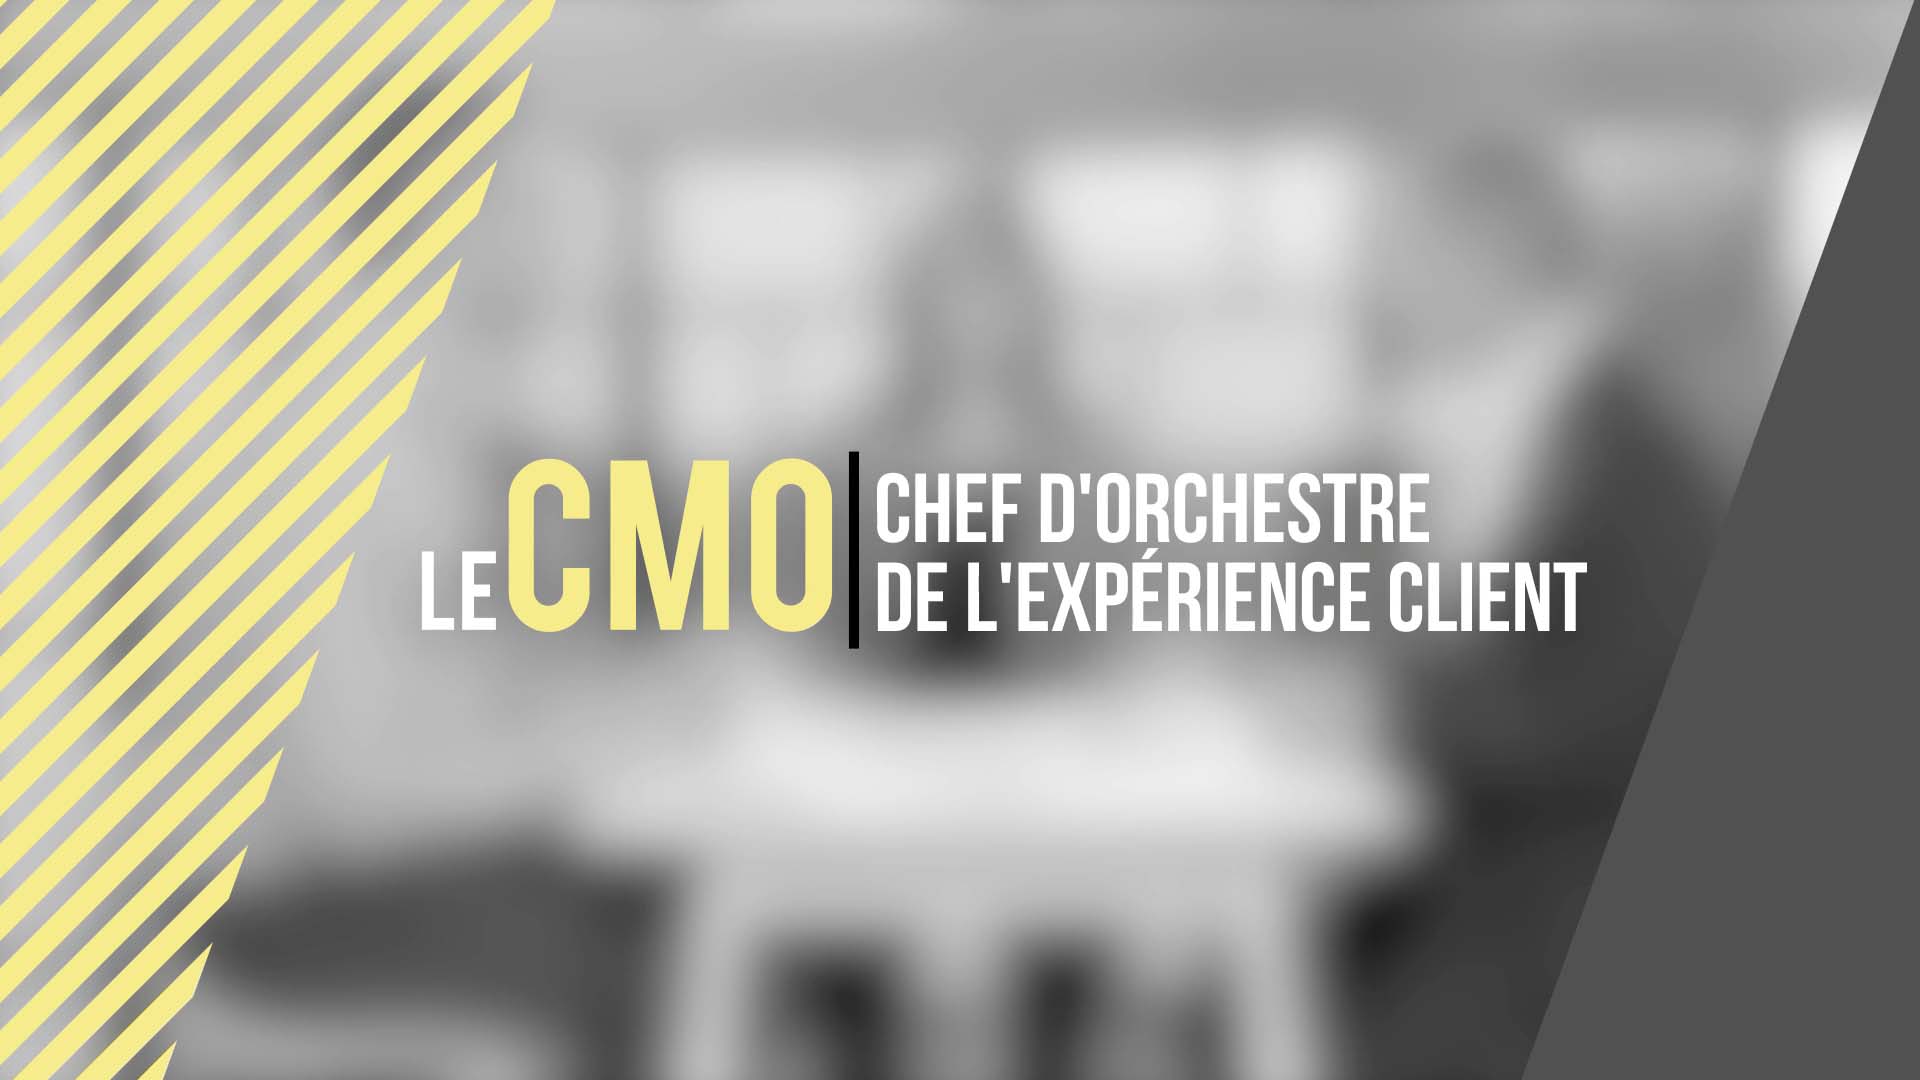 Le CMO – Chef d’orchestre de l’expérience client